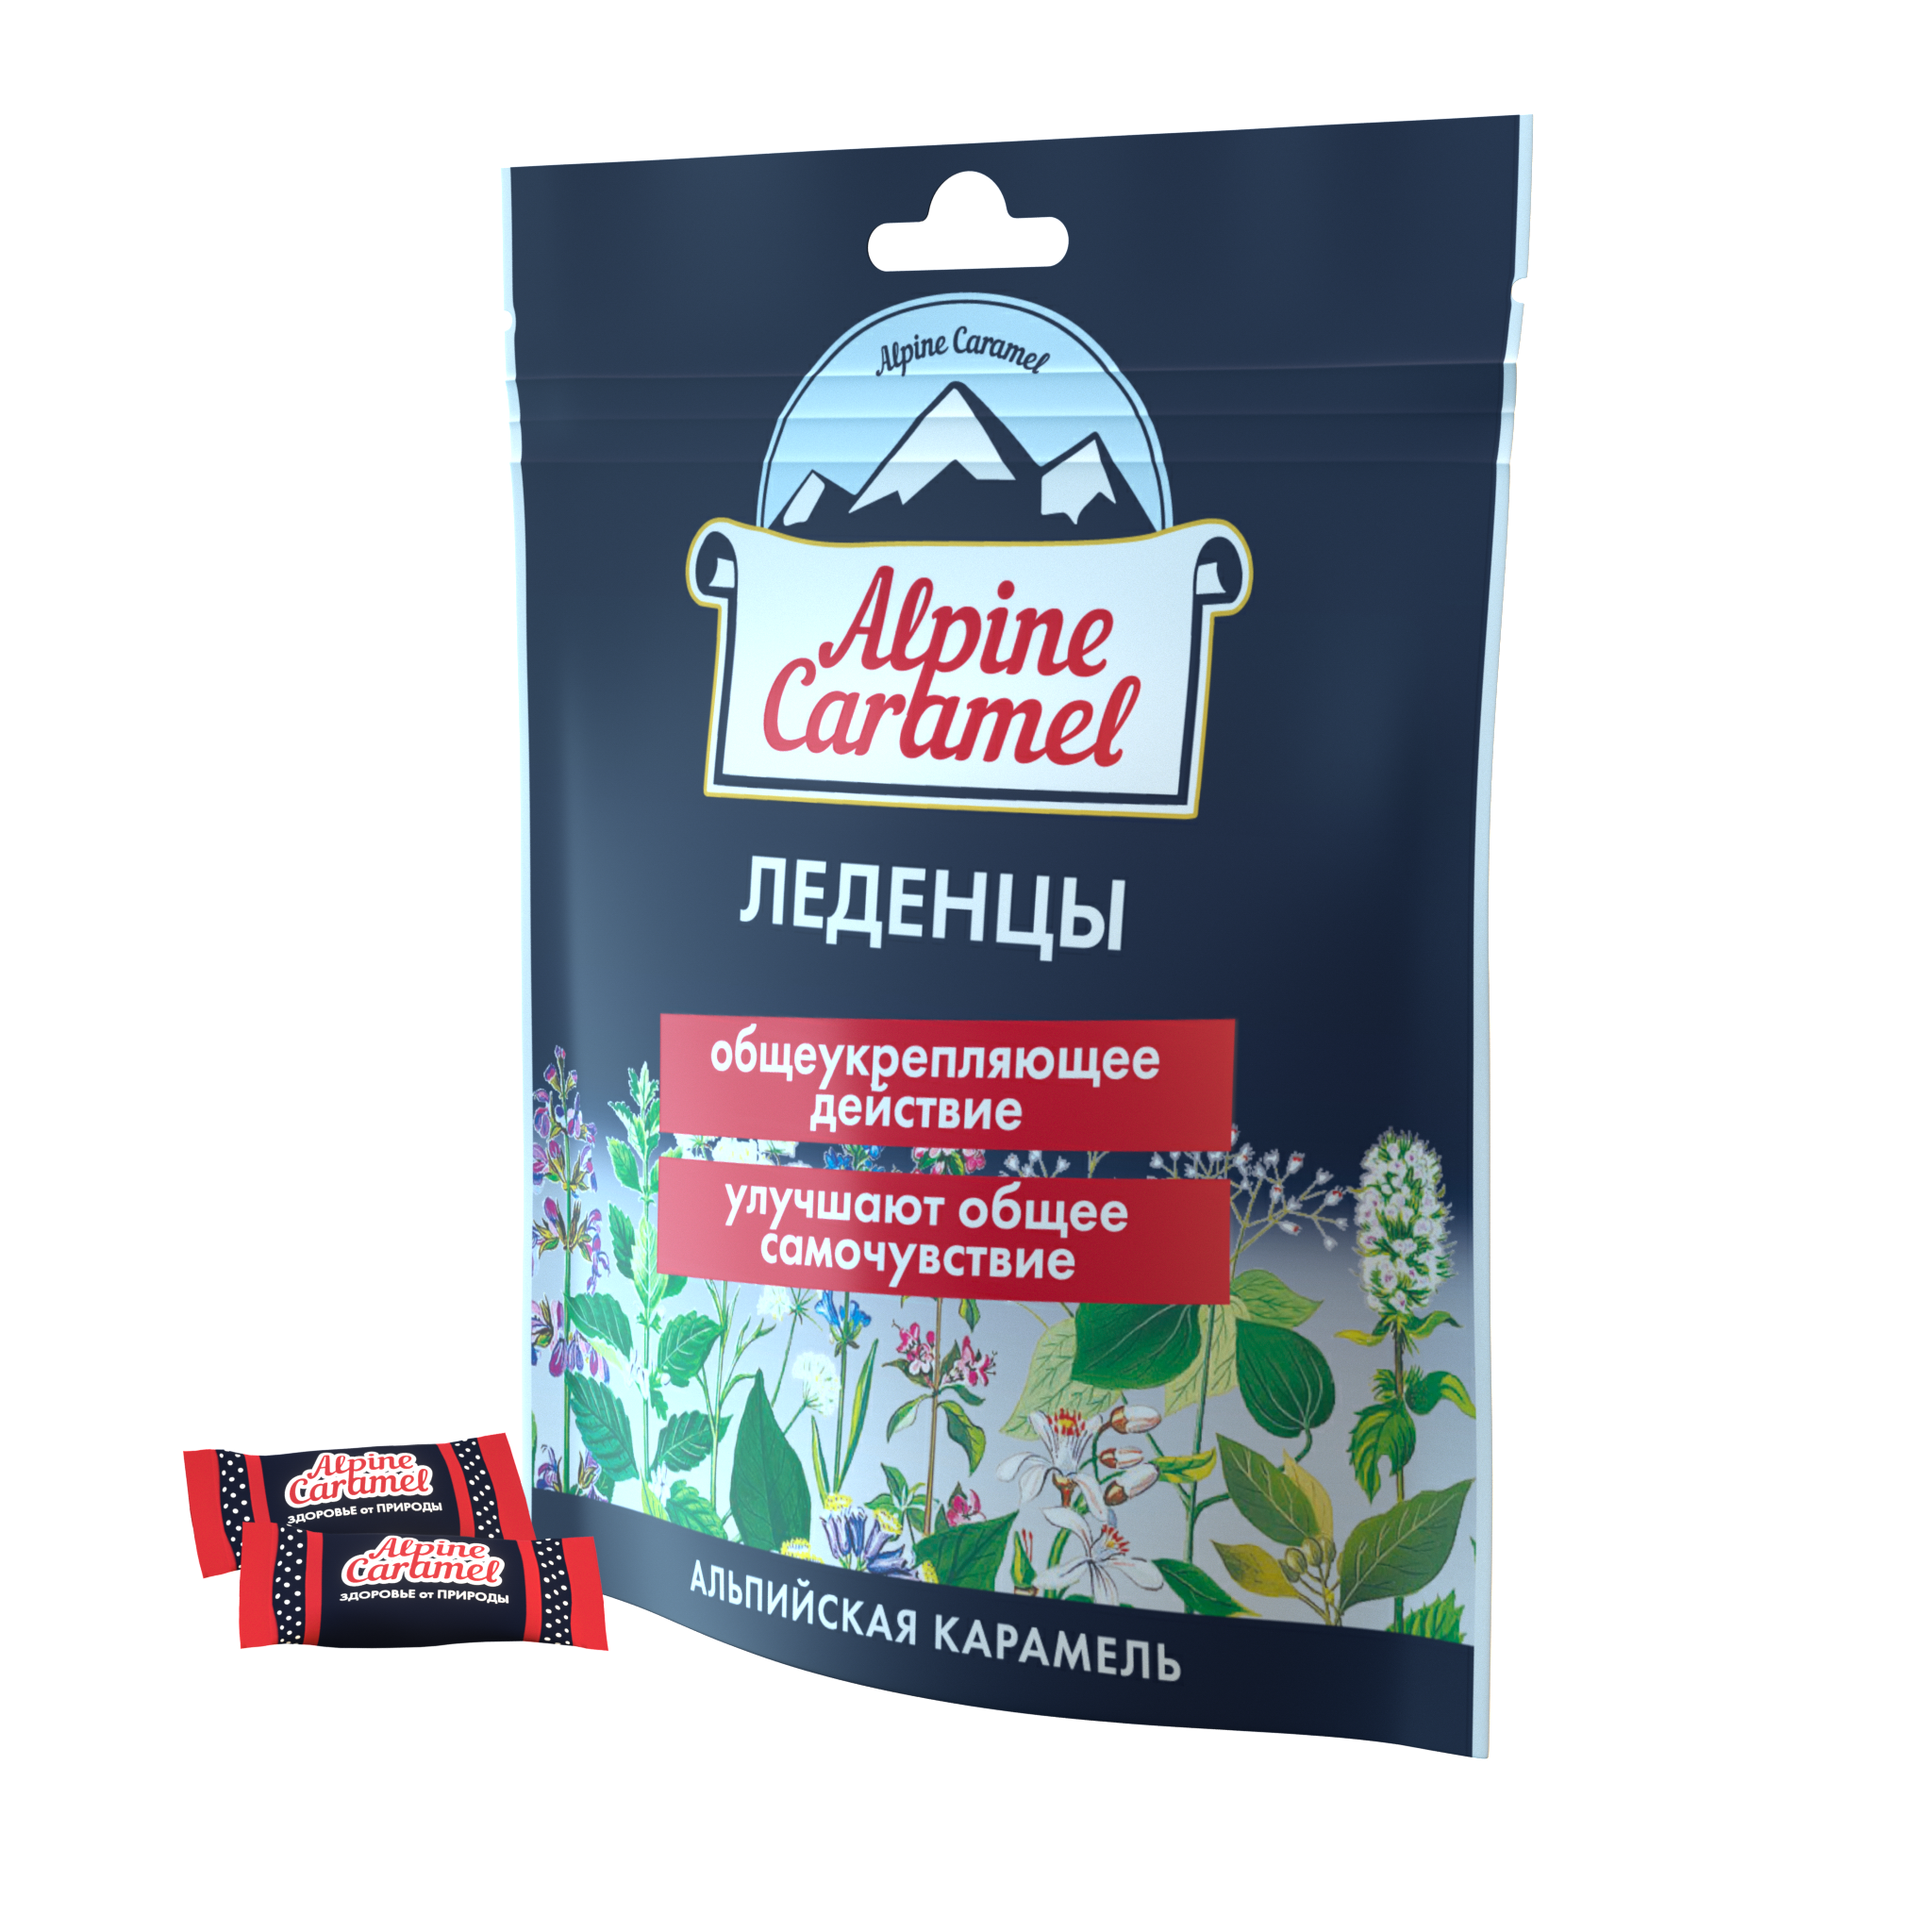 Alpine Caramel Альпийская Карамель леденцы, 75 г альпийская карамель леденцы уп 75 г 1 шт